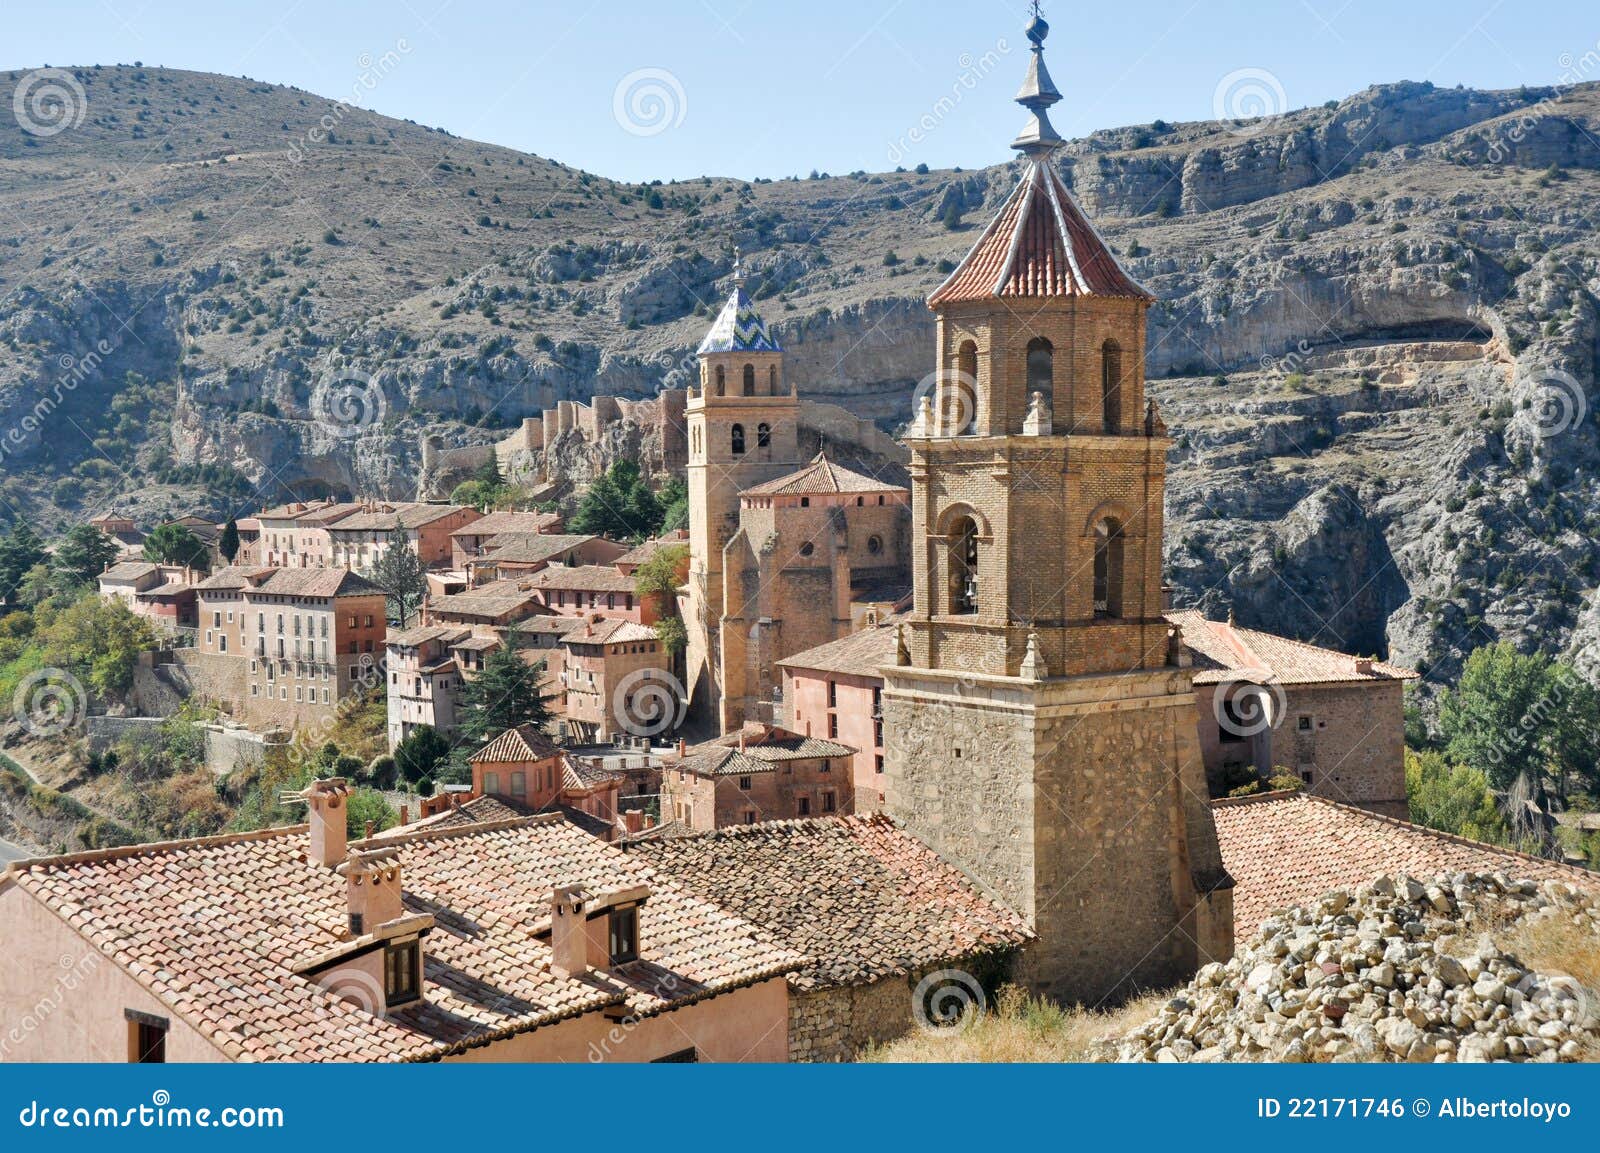 albarracin, medieval town of spain